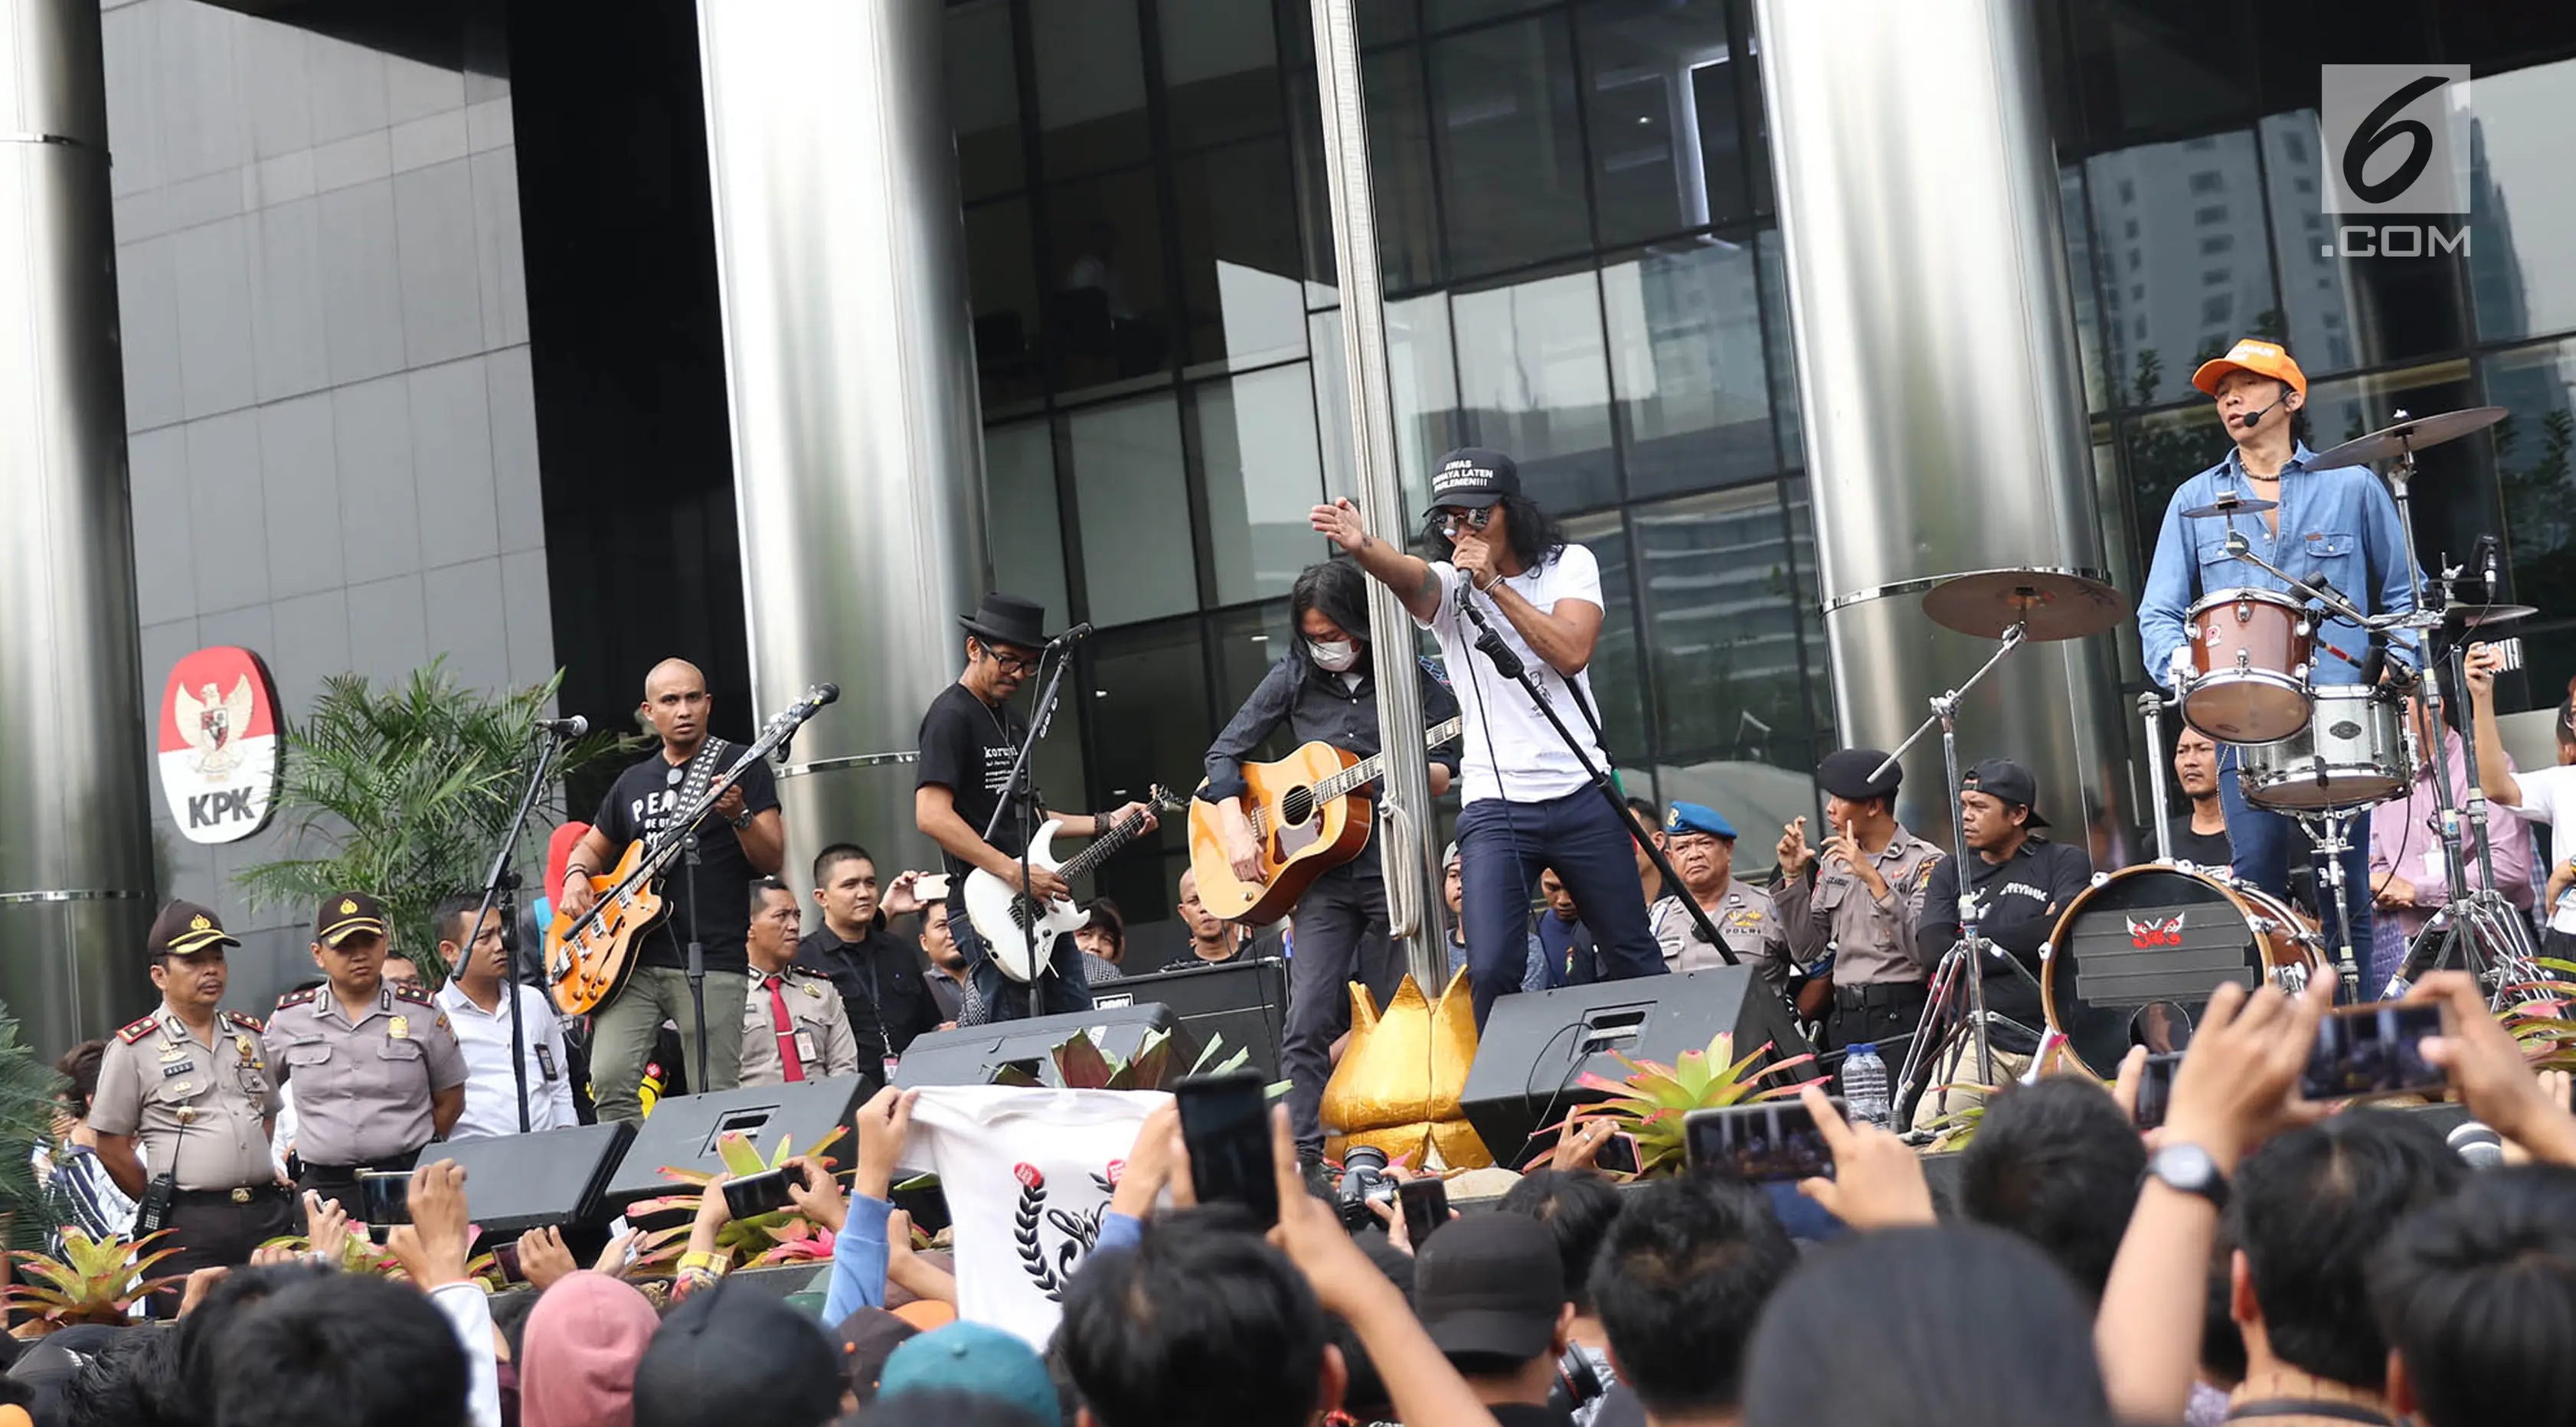 Grup musik Slank tampil dalam Aksi Simpatik Jurus Tandur Dukung KPK, Jakarta, Kamis (13/7). Acara diadakan sebagai bentuk dukungan terhadap KPK serta penolakan hak angket yang dilakukan DPR kepada lembaga antikorupsi itu. (/Immanuel Antonius)